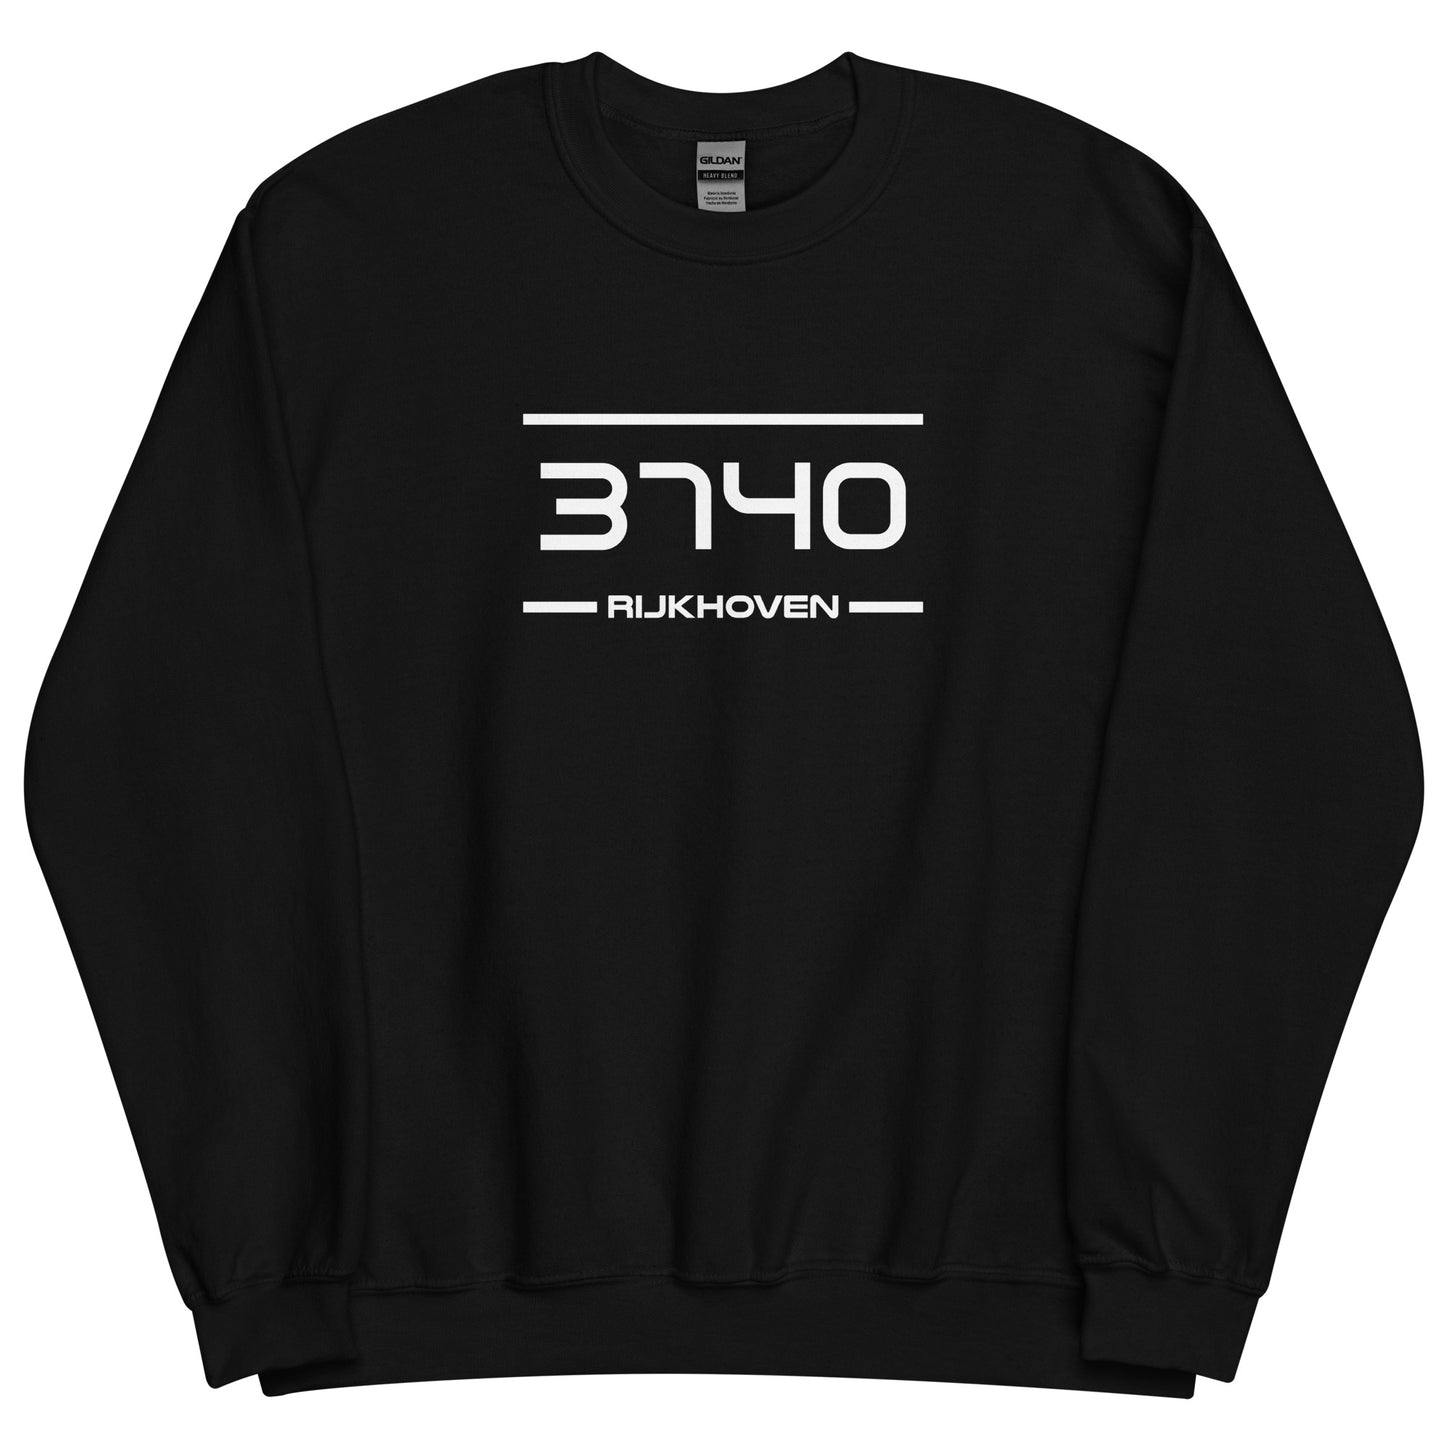 Sweater- 3740 - Rijkhoven (M/V)